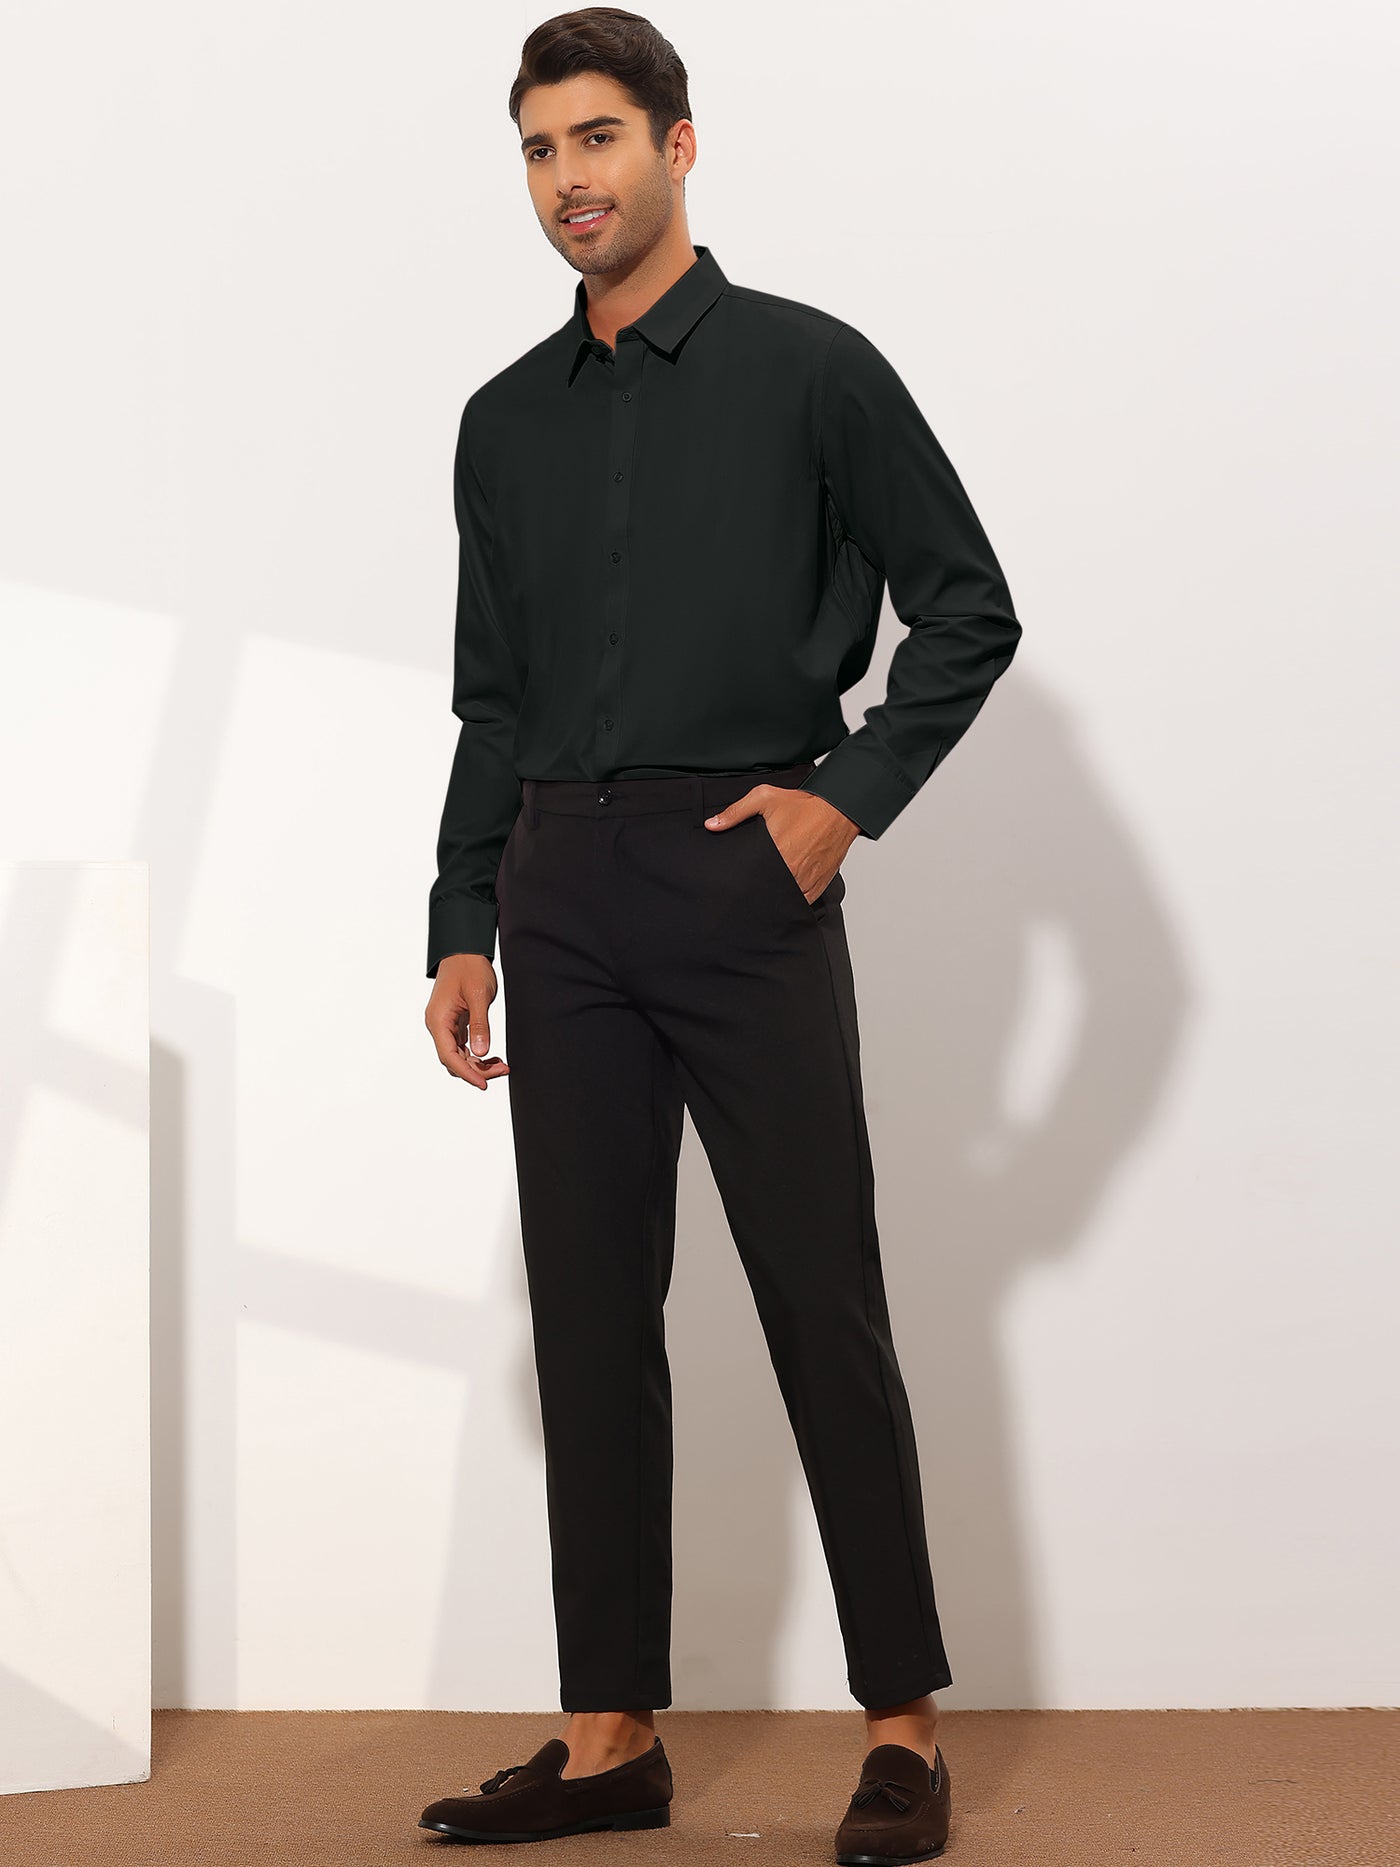 Bublédon Men's Regular Fit Solid Button Down Long Sleeves Business Dress Shirt